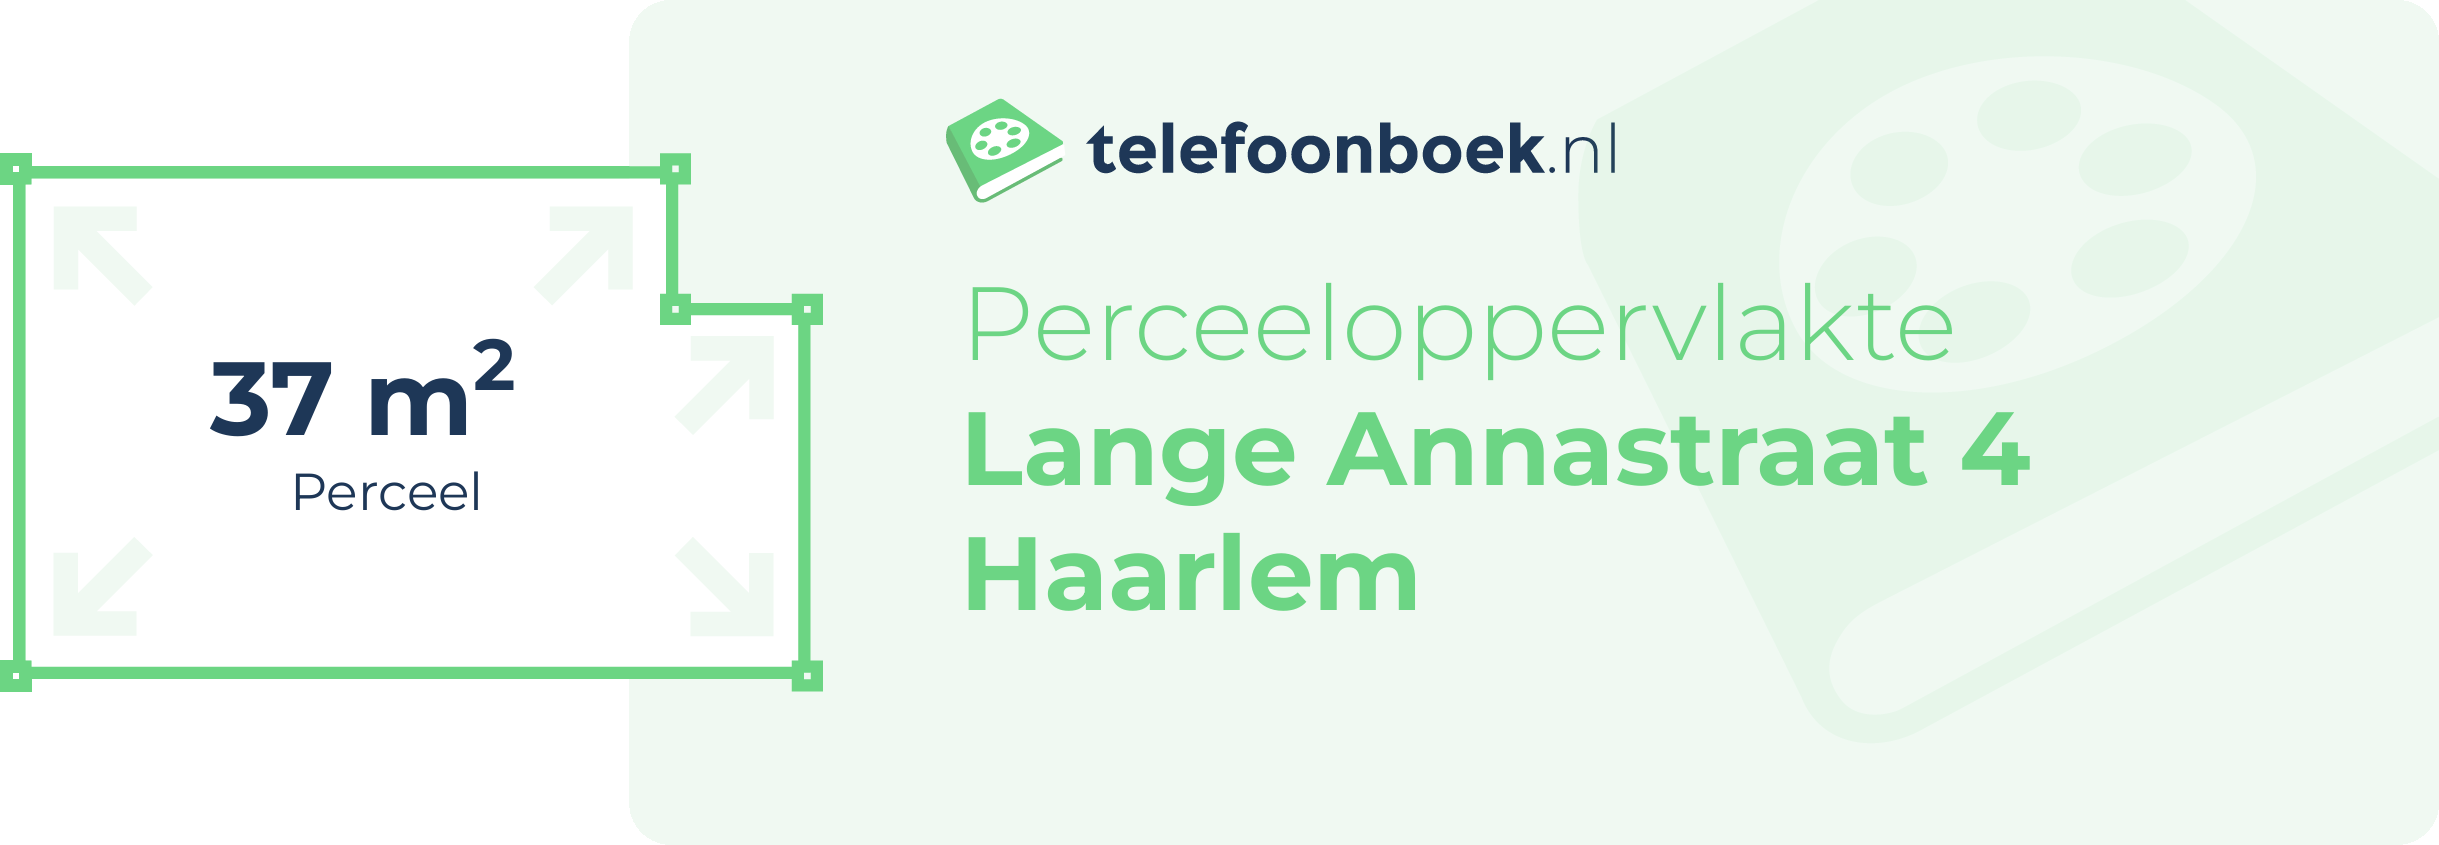 Perceeloppervlakte Lange Annastraat 4 Haarlem